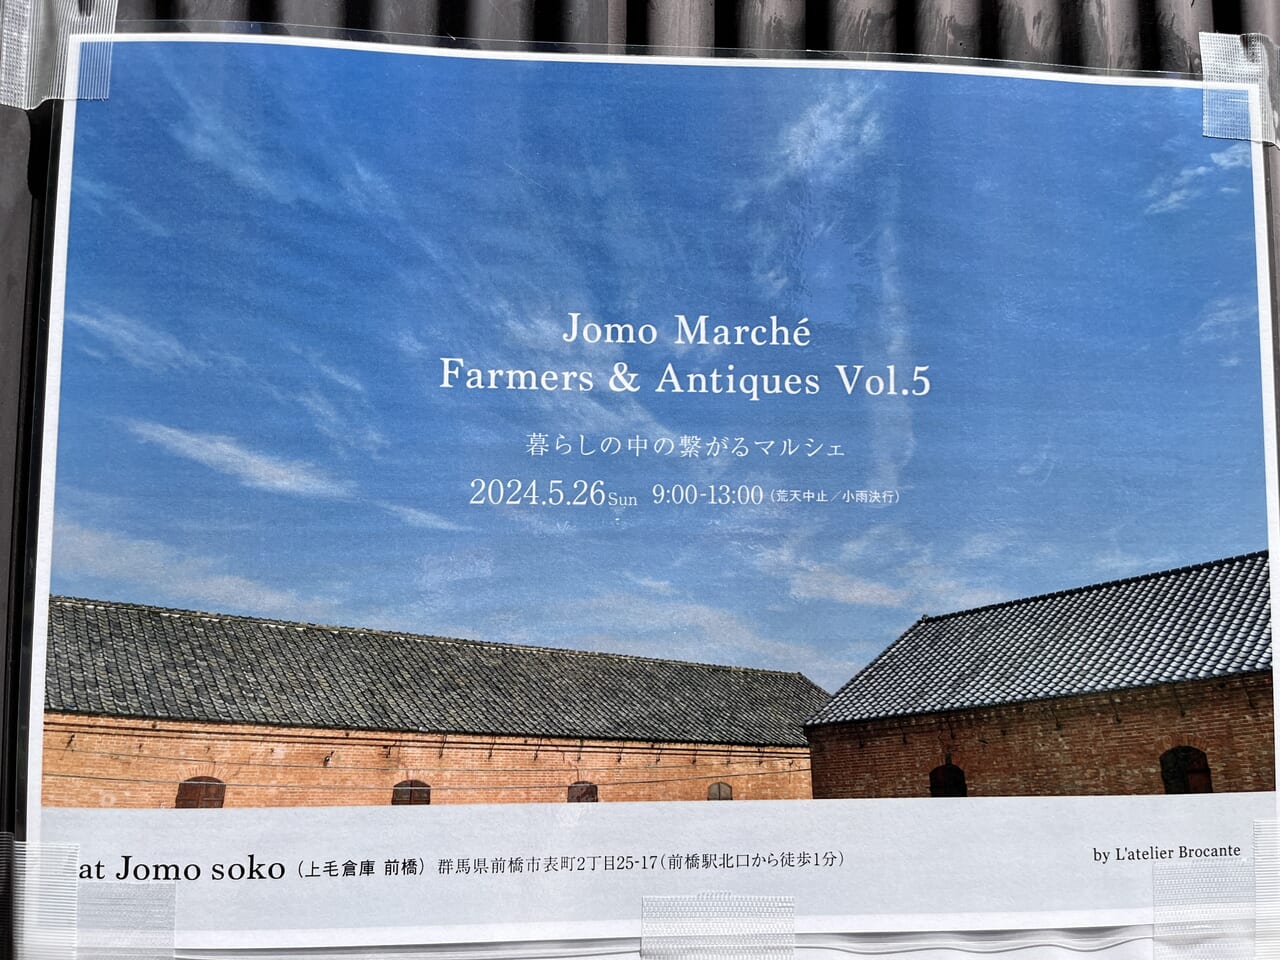 「JOMO Marché」開催告知のポスター